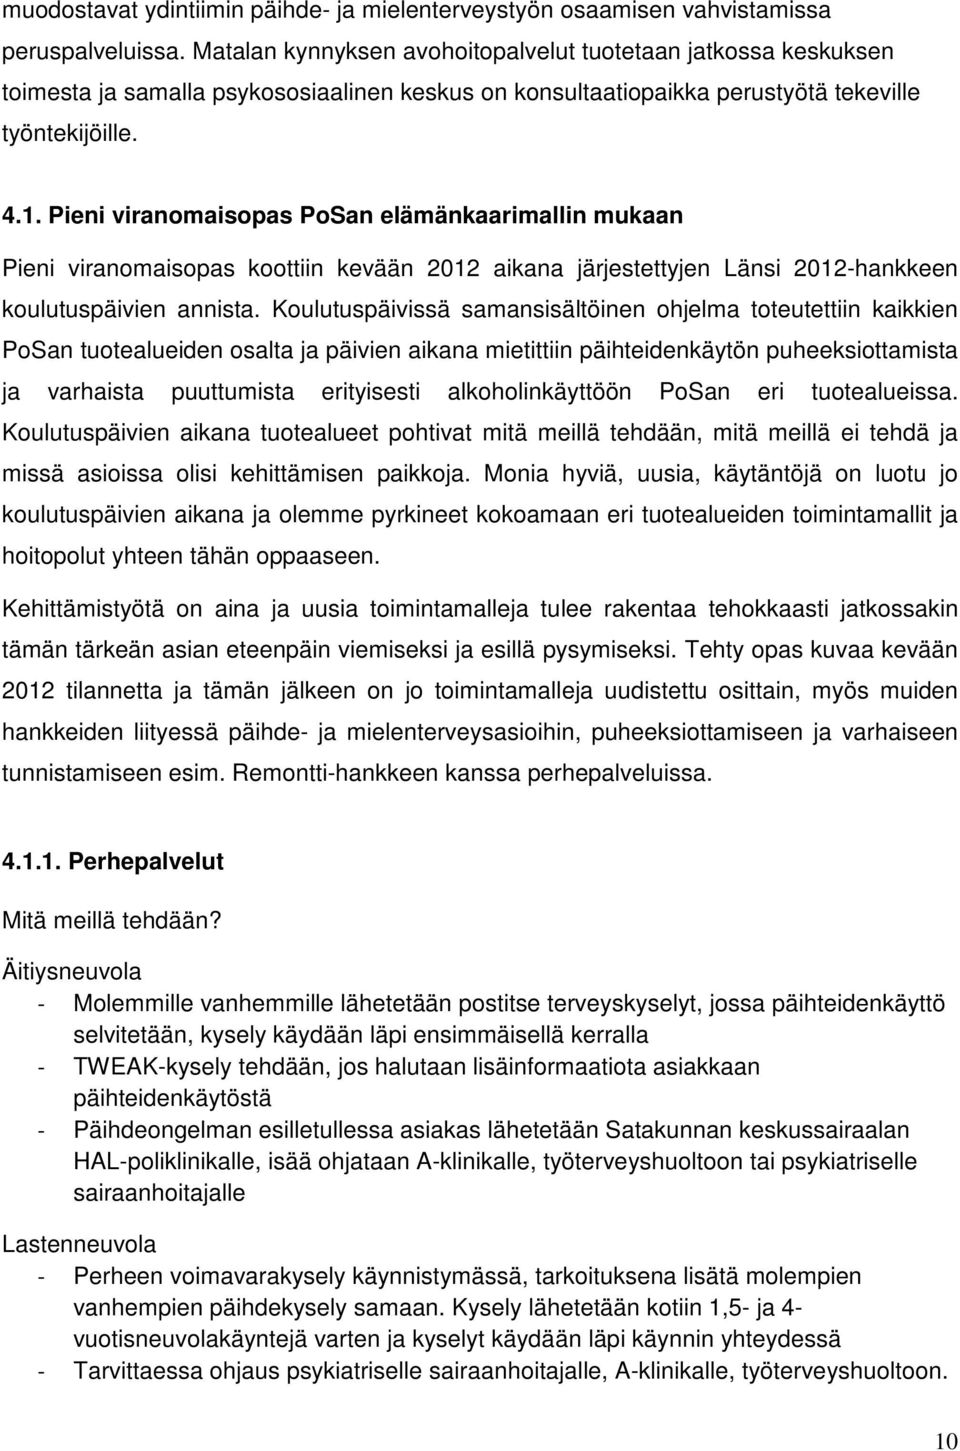 Pieni viranomaisopas PoSan elämänkaarimallin mukaan Pieni viranomaisopas koottiin kevään 2012 aikana järjestettyjen Länsi 2012-hankkeen koulutuspäivien annista.